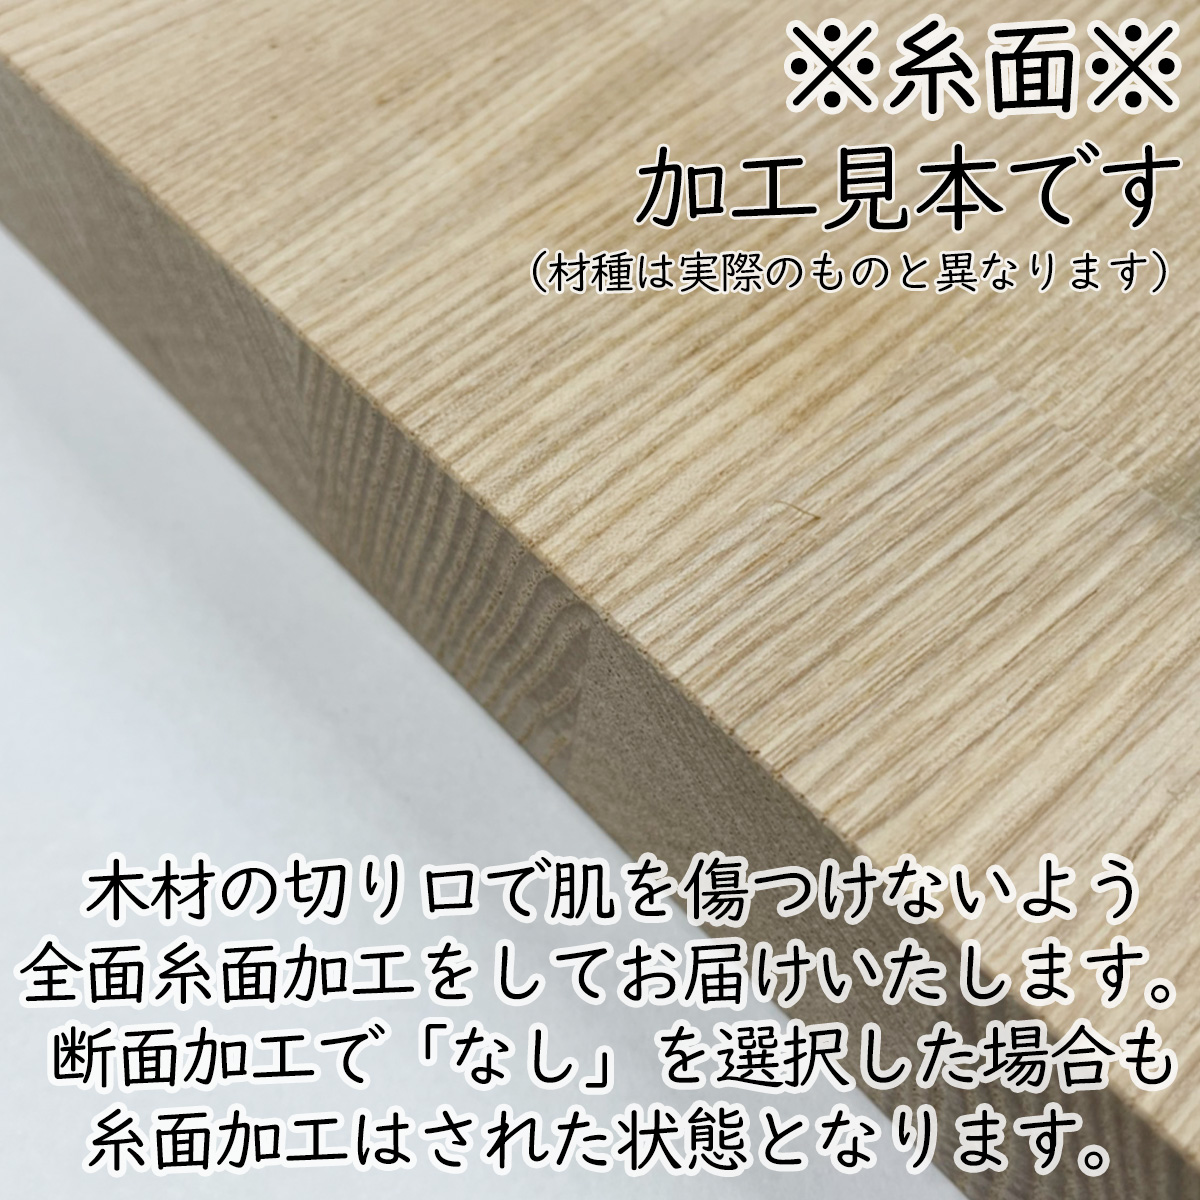 おすすめ特集 タモ 板材 (厚み30mm×幅100mm×長さ800mm) 板 diy 木材